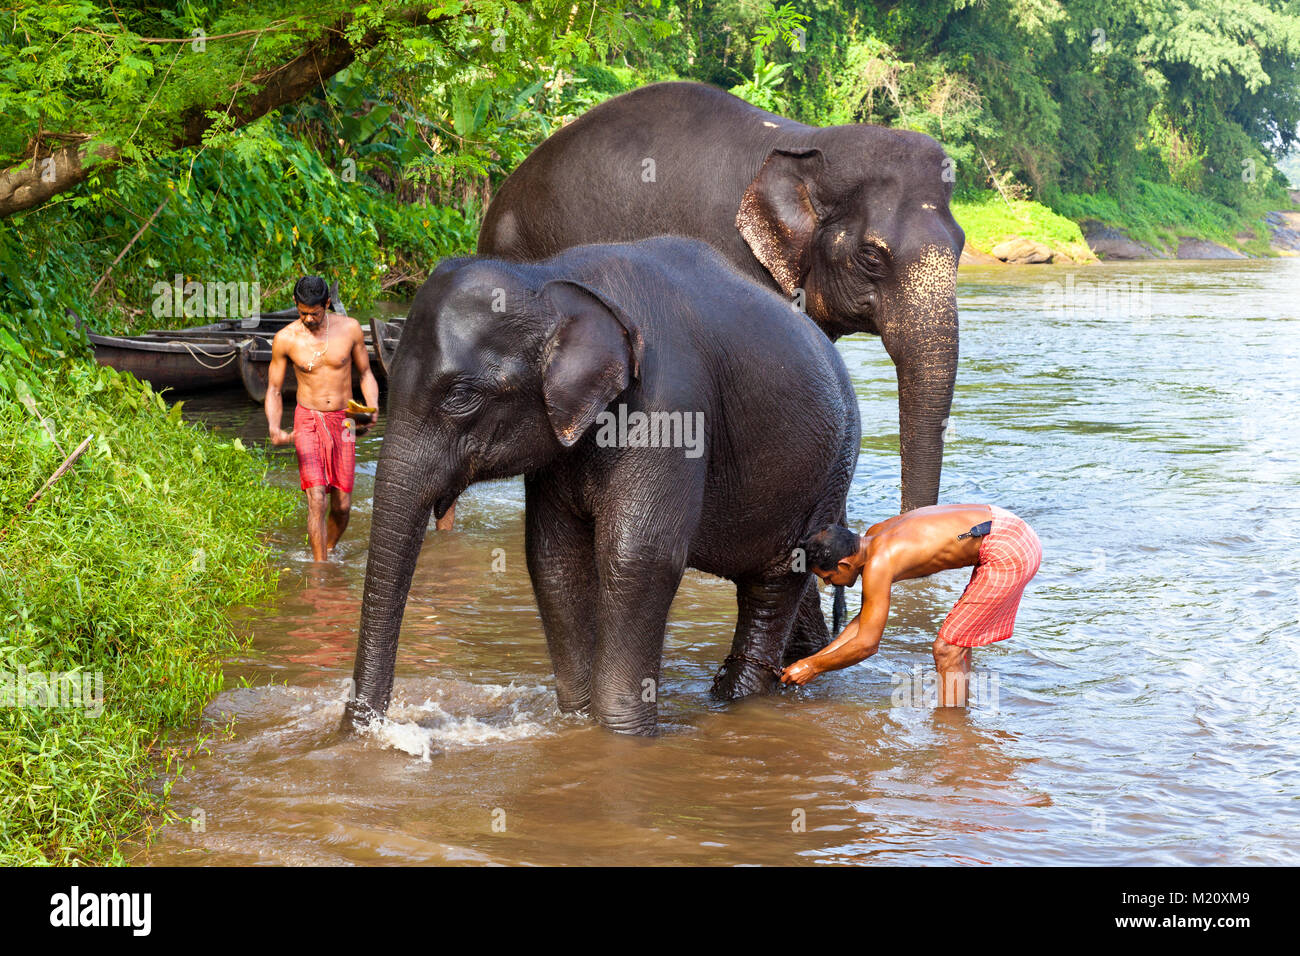 Los elefantes están bañadas en Periyar River, cerca de la aldea de Kodanad en Kerala, India. Foto de stock